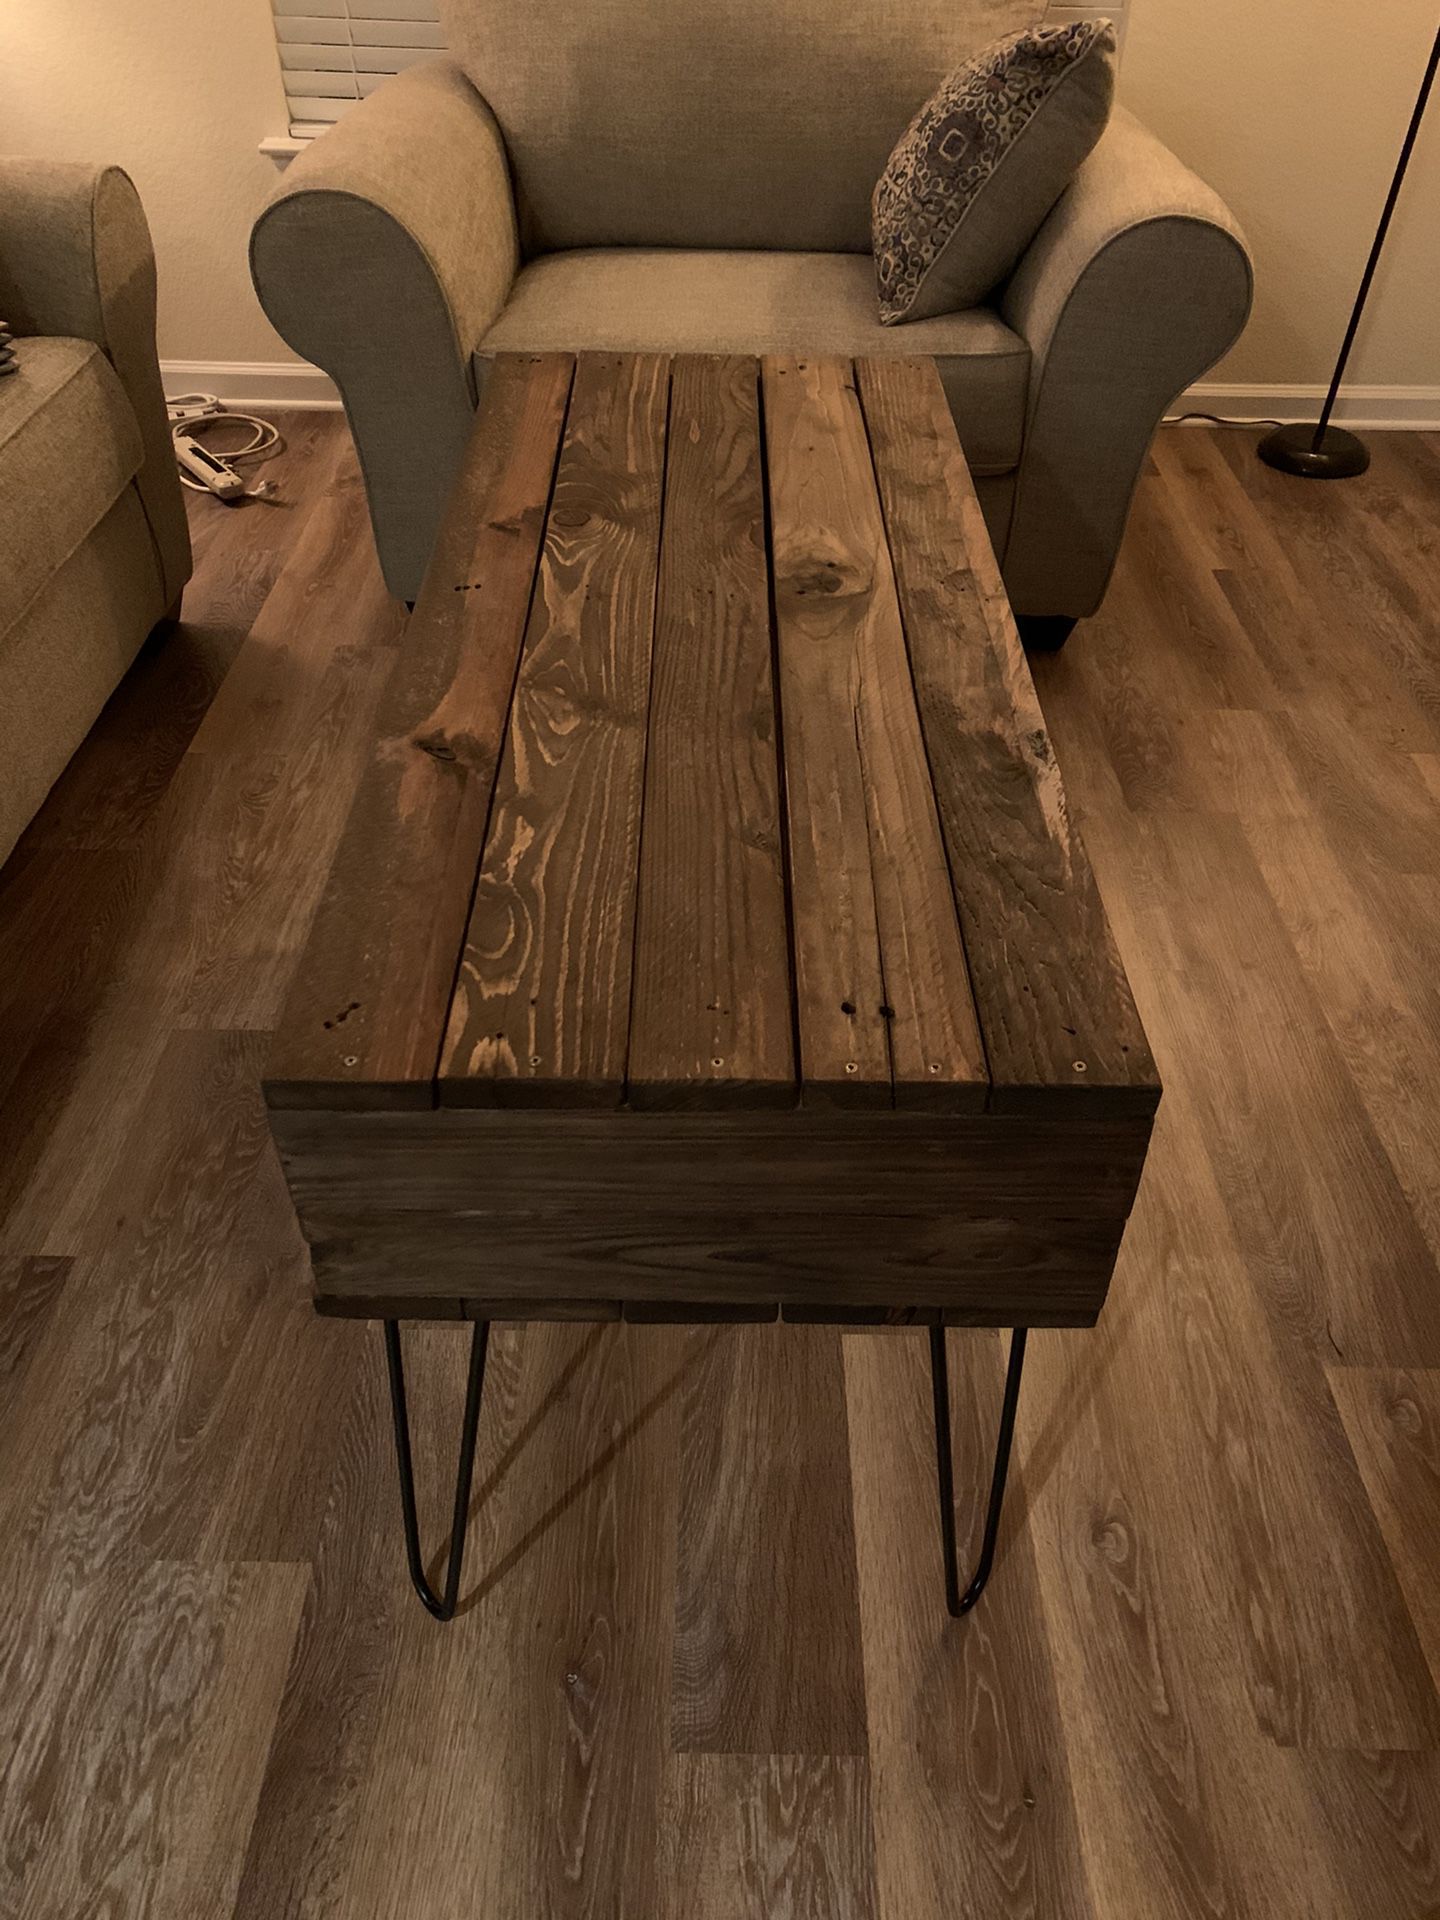 Homemade wood coffee table!